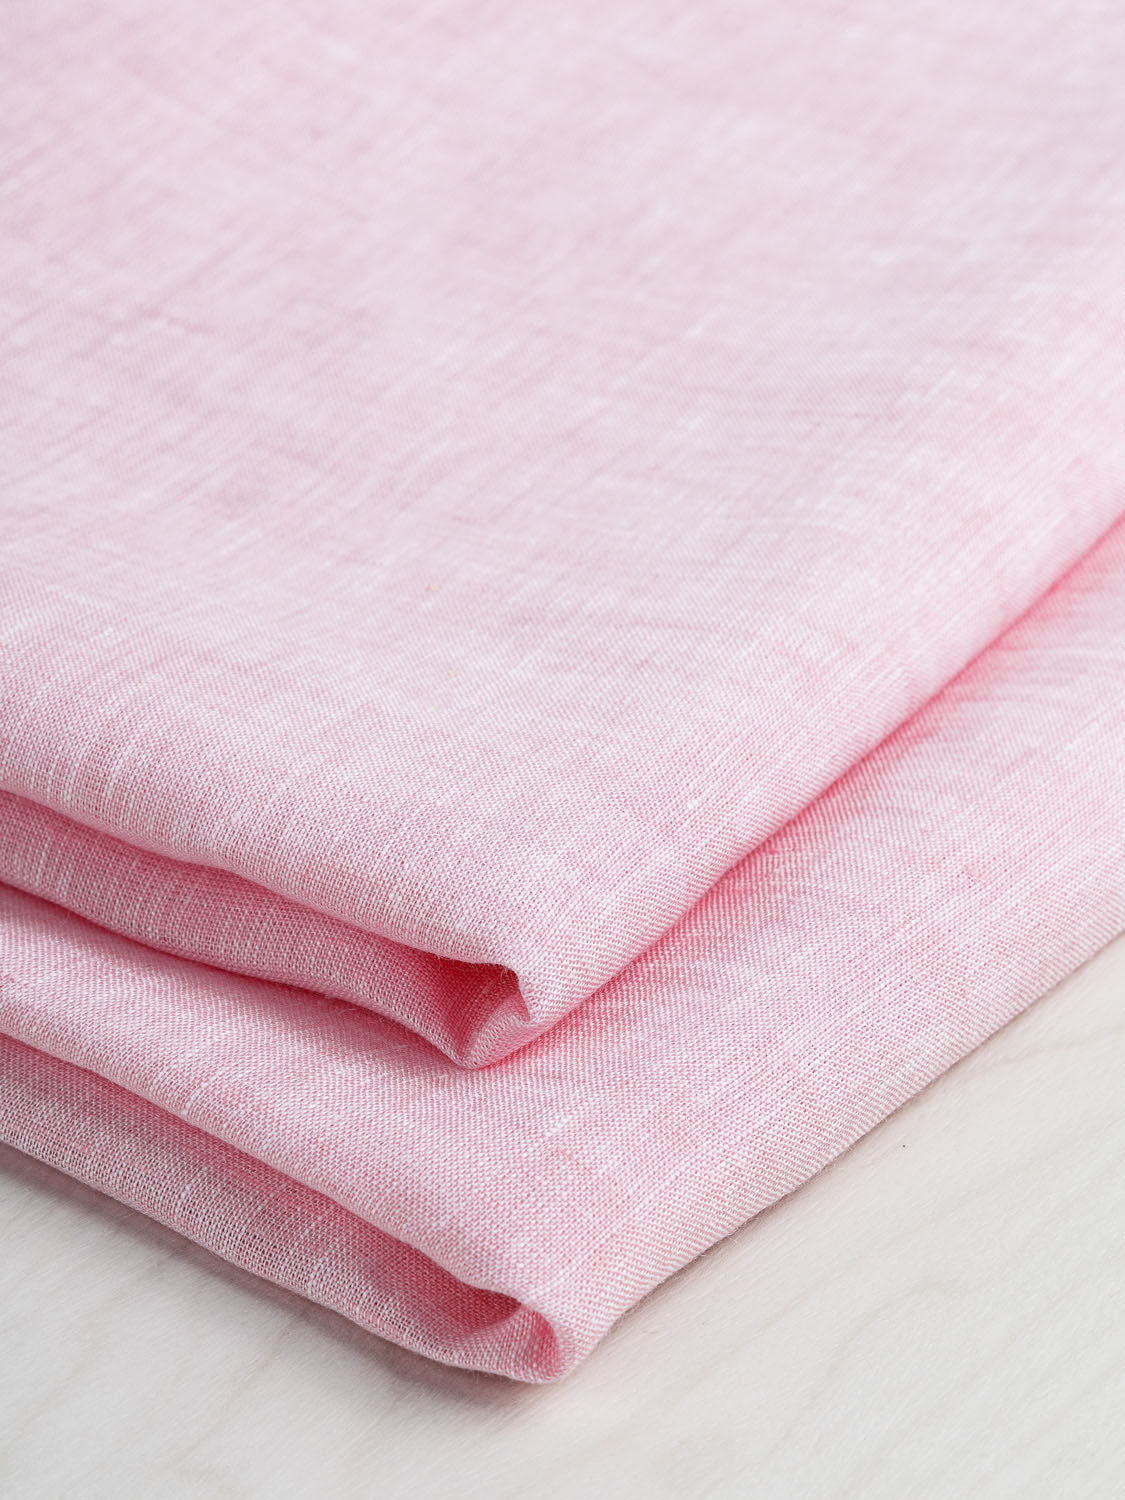 Yarn Dyed Chambray Linen - Petal Pink | Core Fabrics